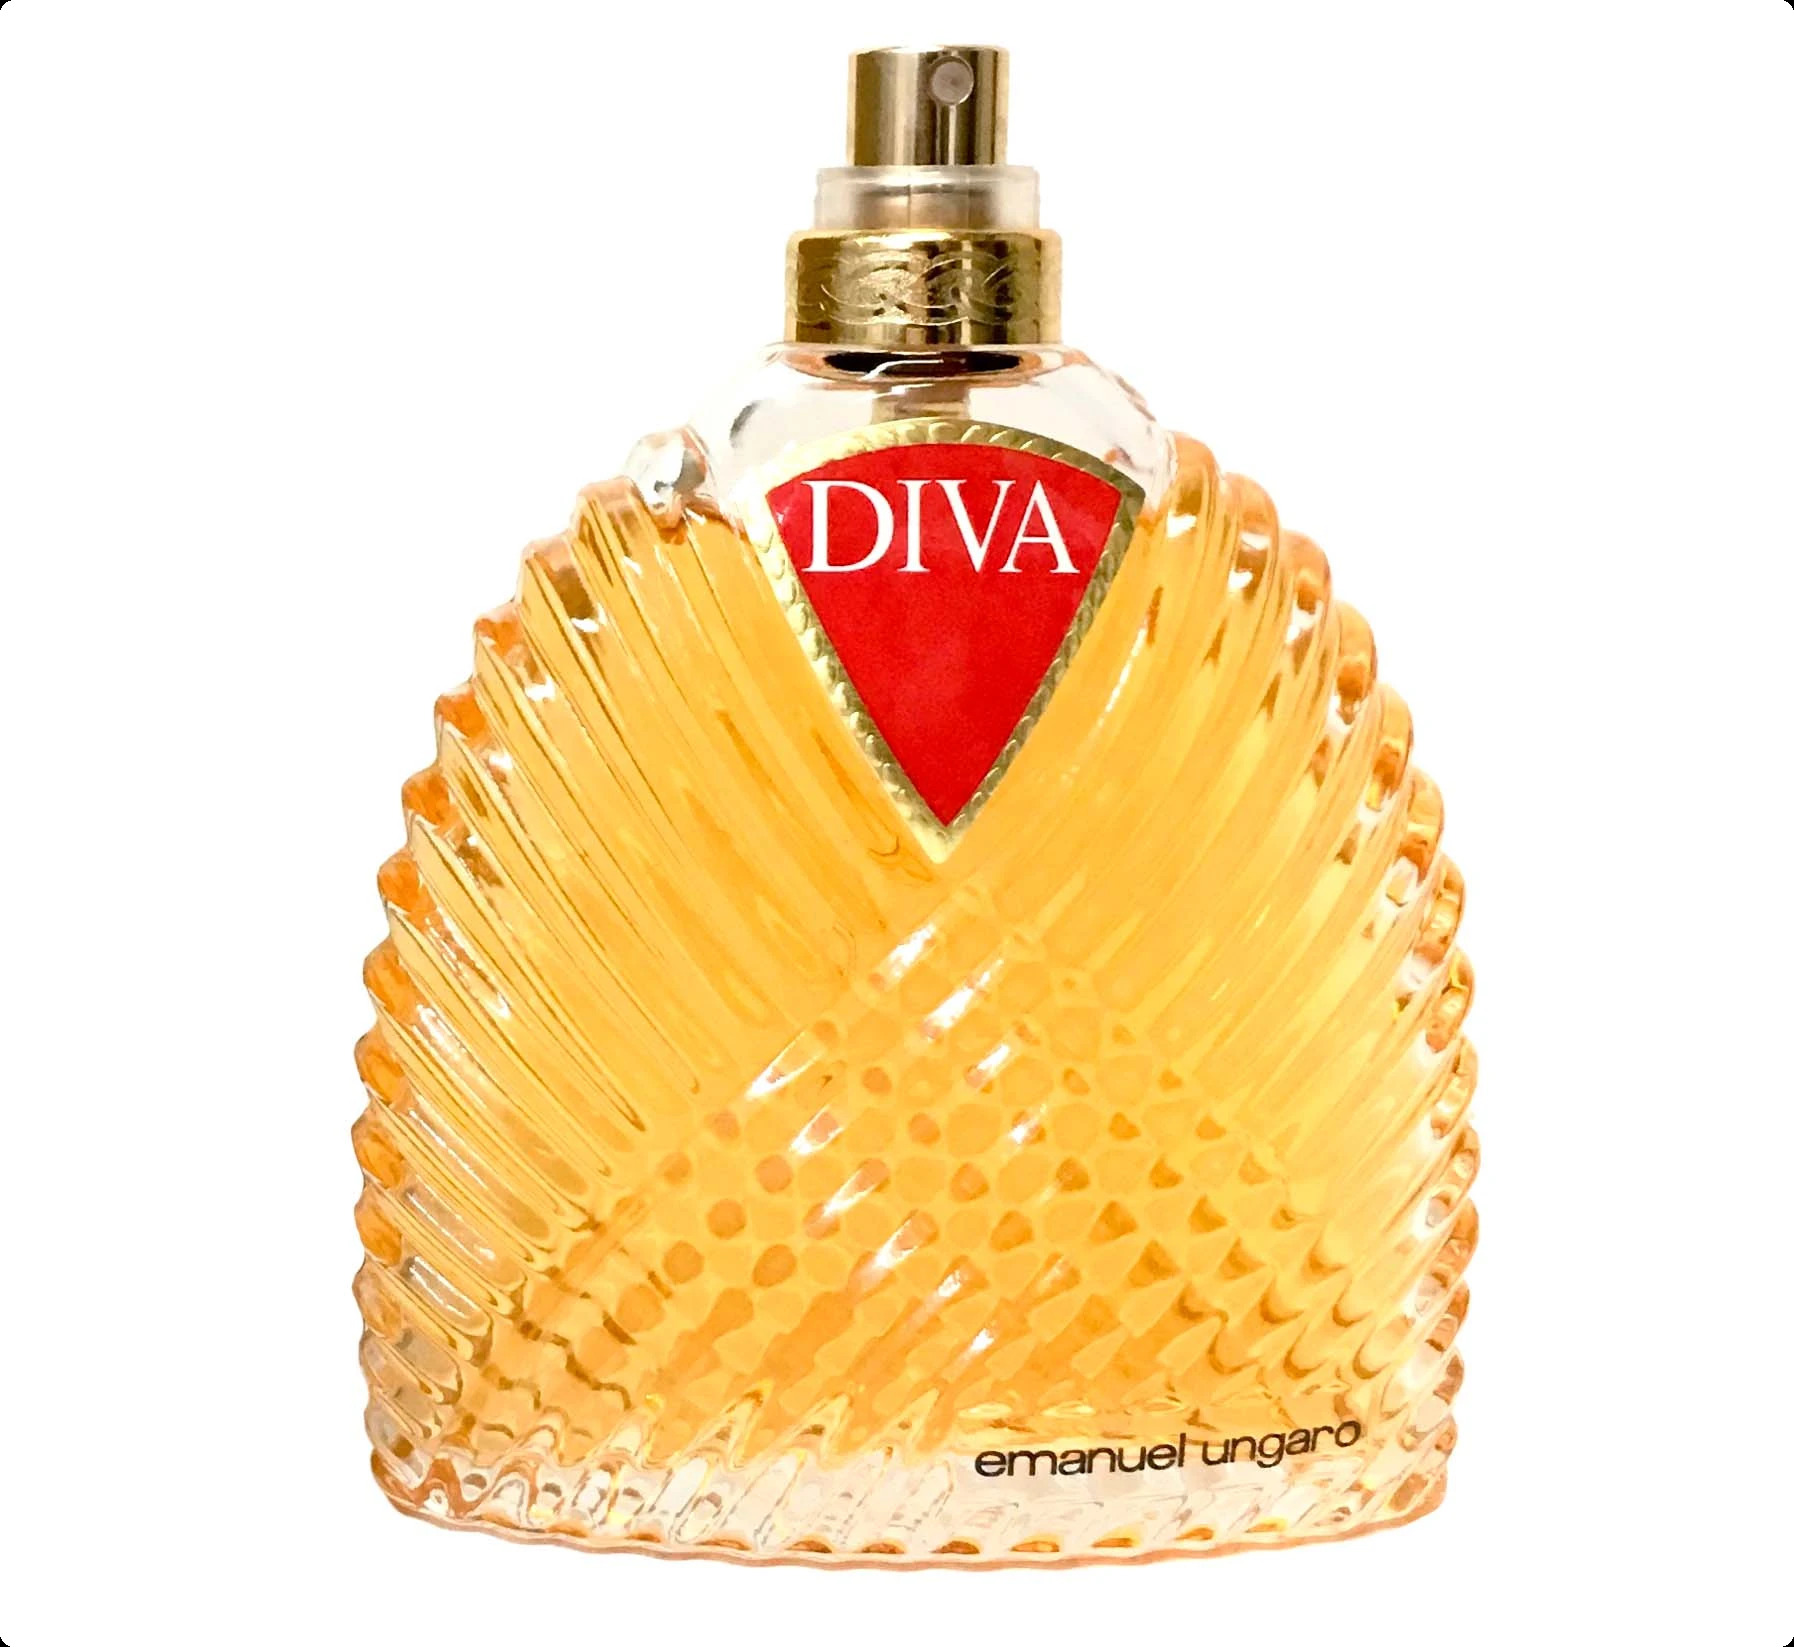 Emanuel Ungaro Diva Eau de Parfum Парфюмерная вода (уценка) 100 мл для женщин